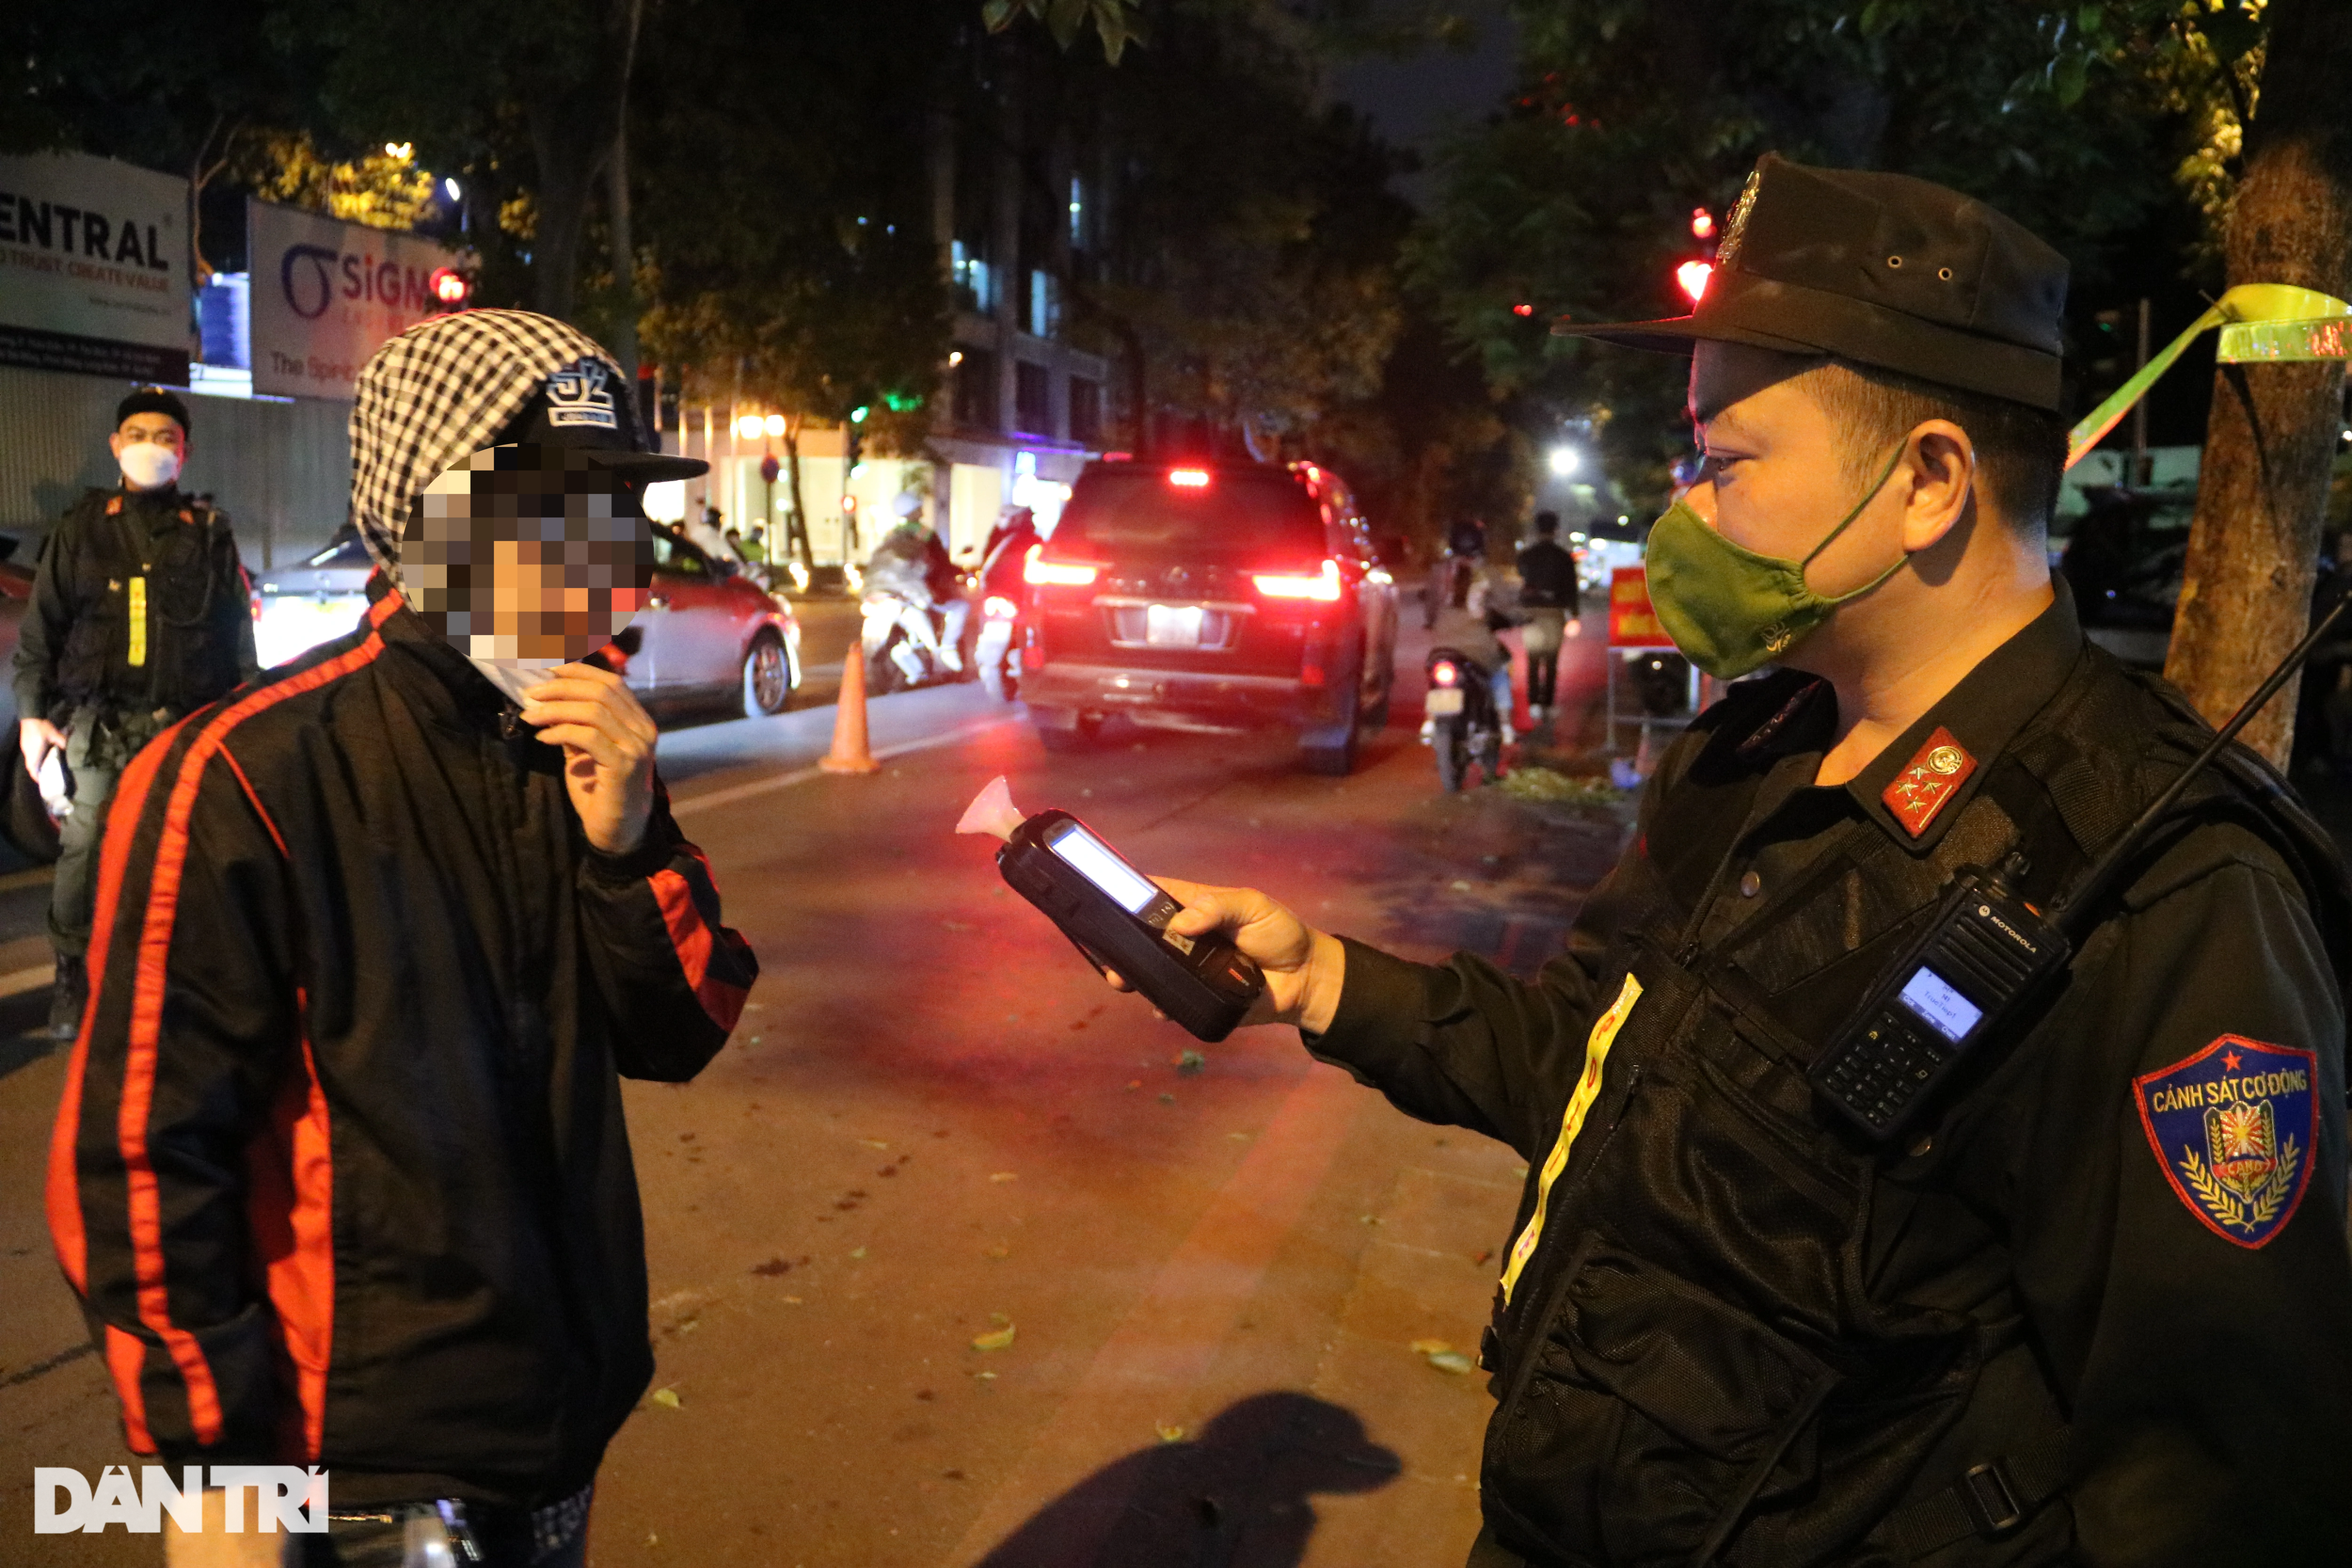 Cảnh sát 141 kiểm tra nồng độ cồn hàng loạt người đi xe đạp trên phố Hà Nội - 7